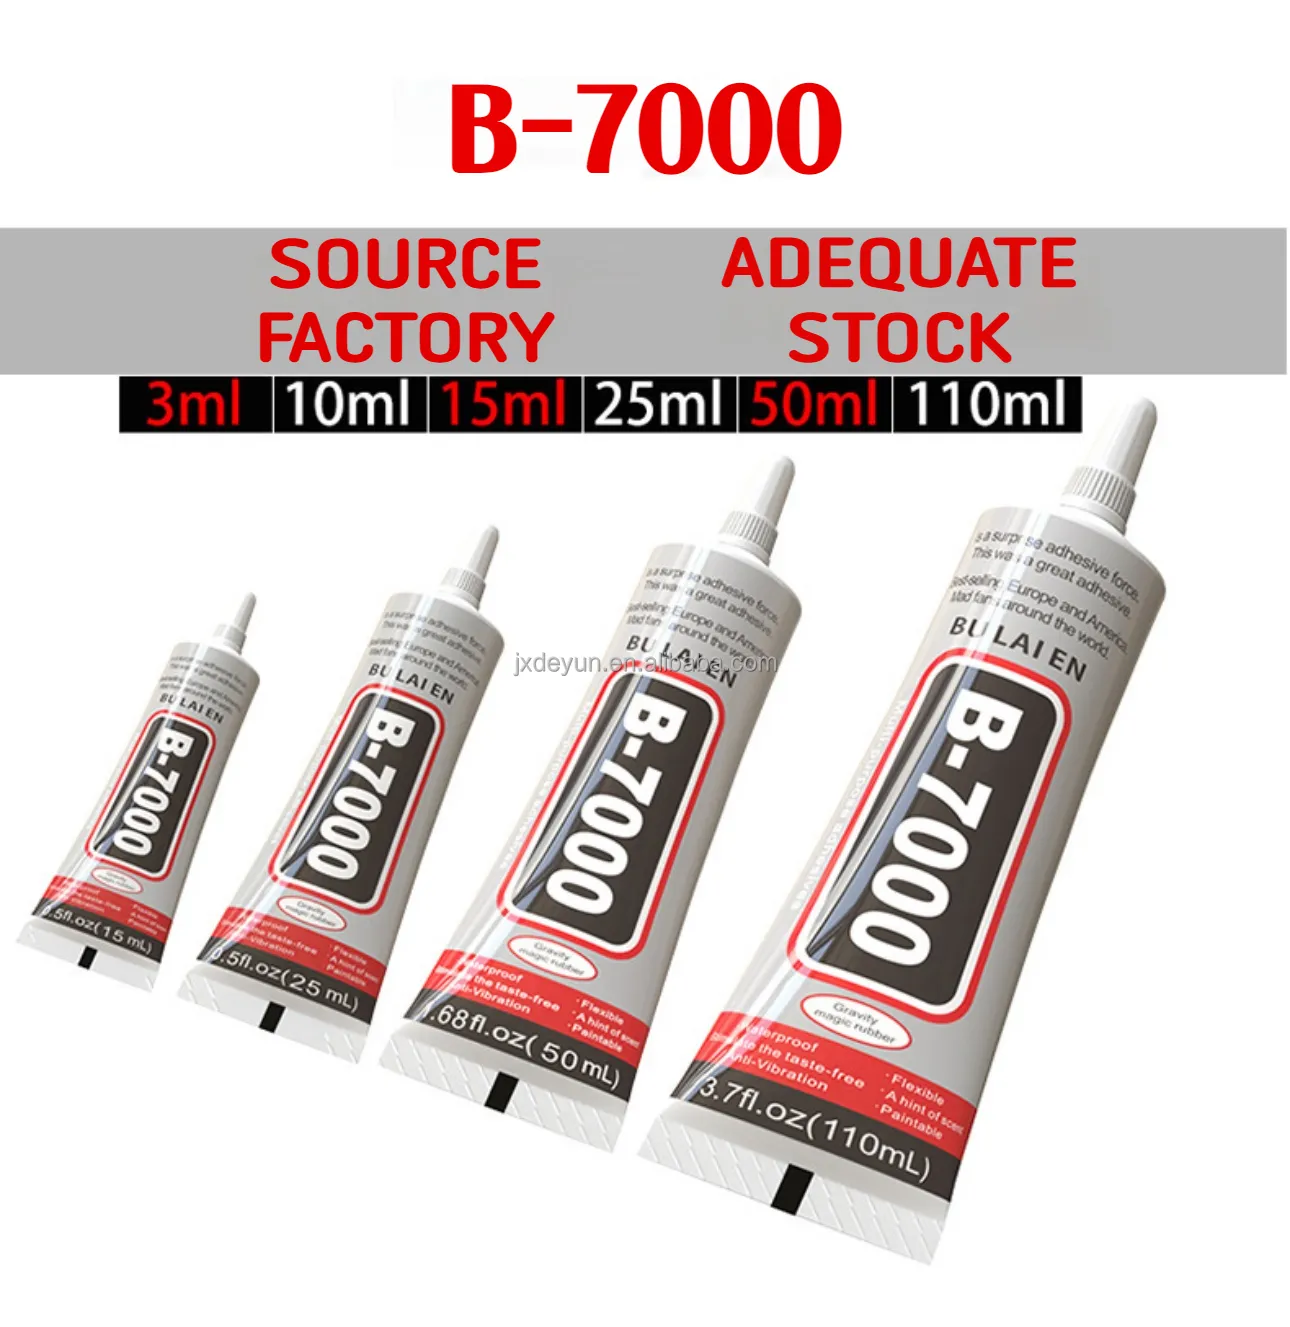 لاصق شفاف B-7000 من BU Lai En 110 مل بسعر خاص لاصق سائل شفاف متعدد الأغراض لاصق فائق لإصلاح الشاشات